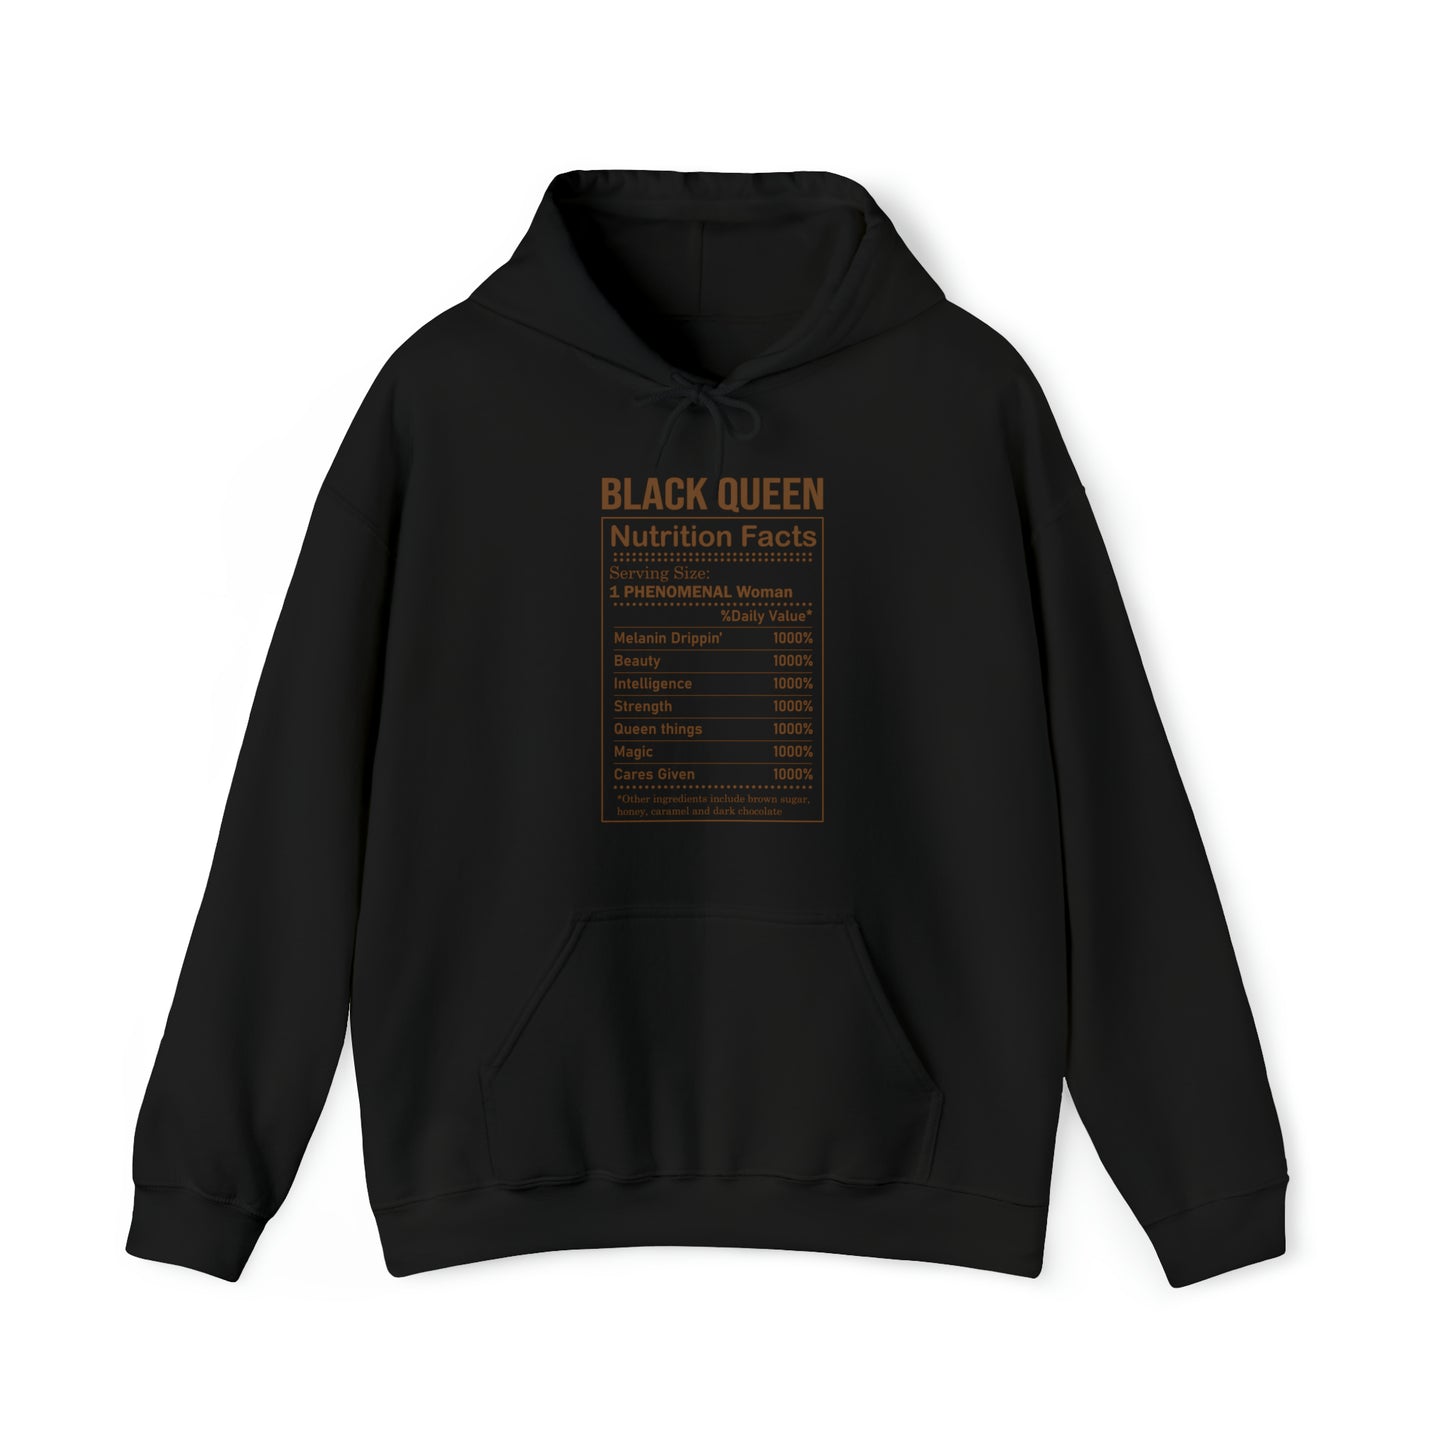 Black Queen Nutrition Facts - Hooded Sweatshirt